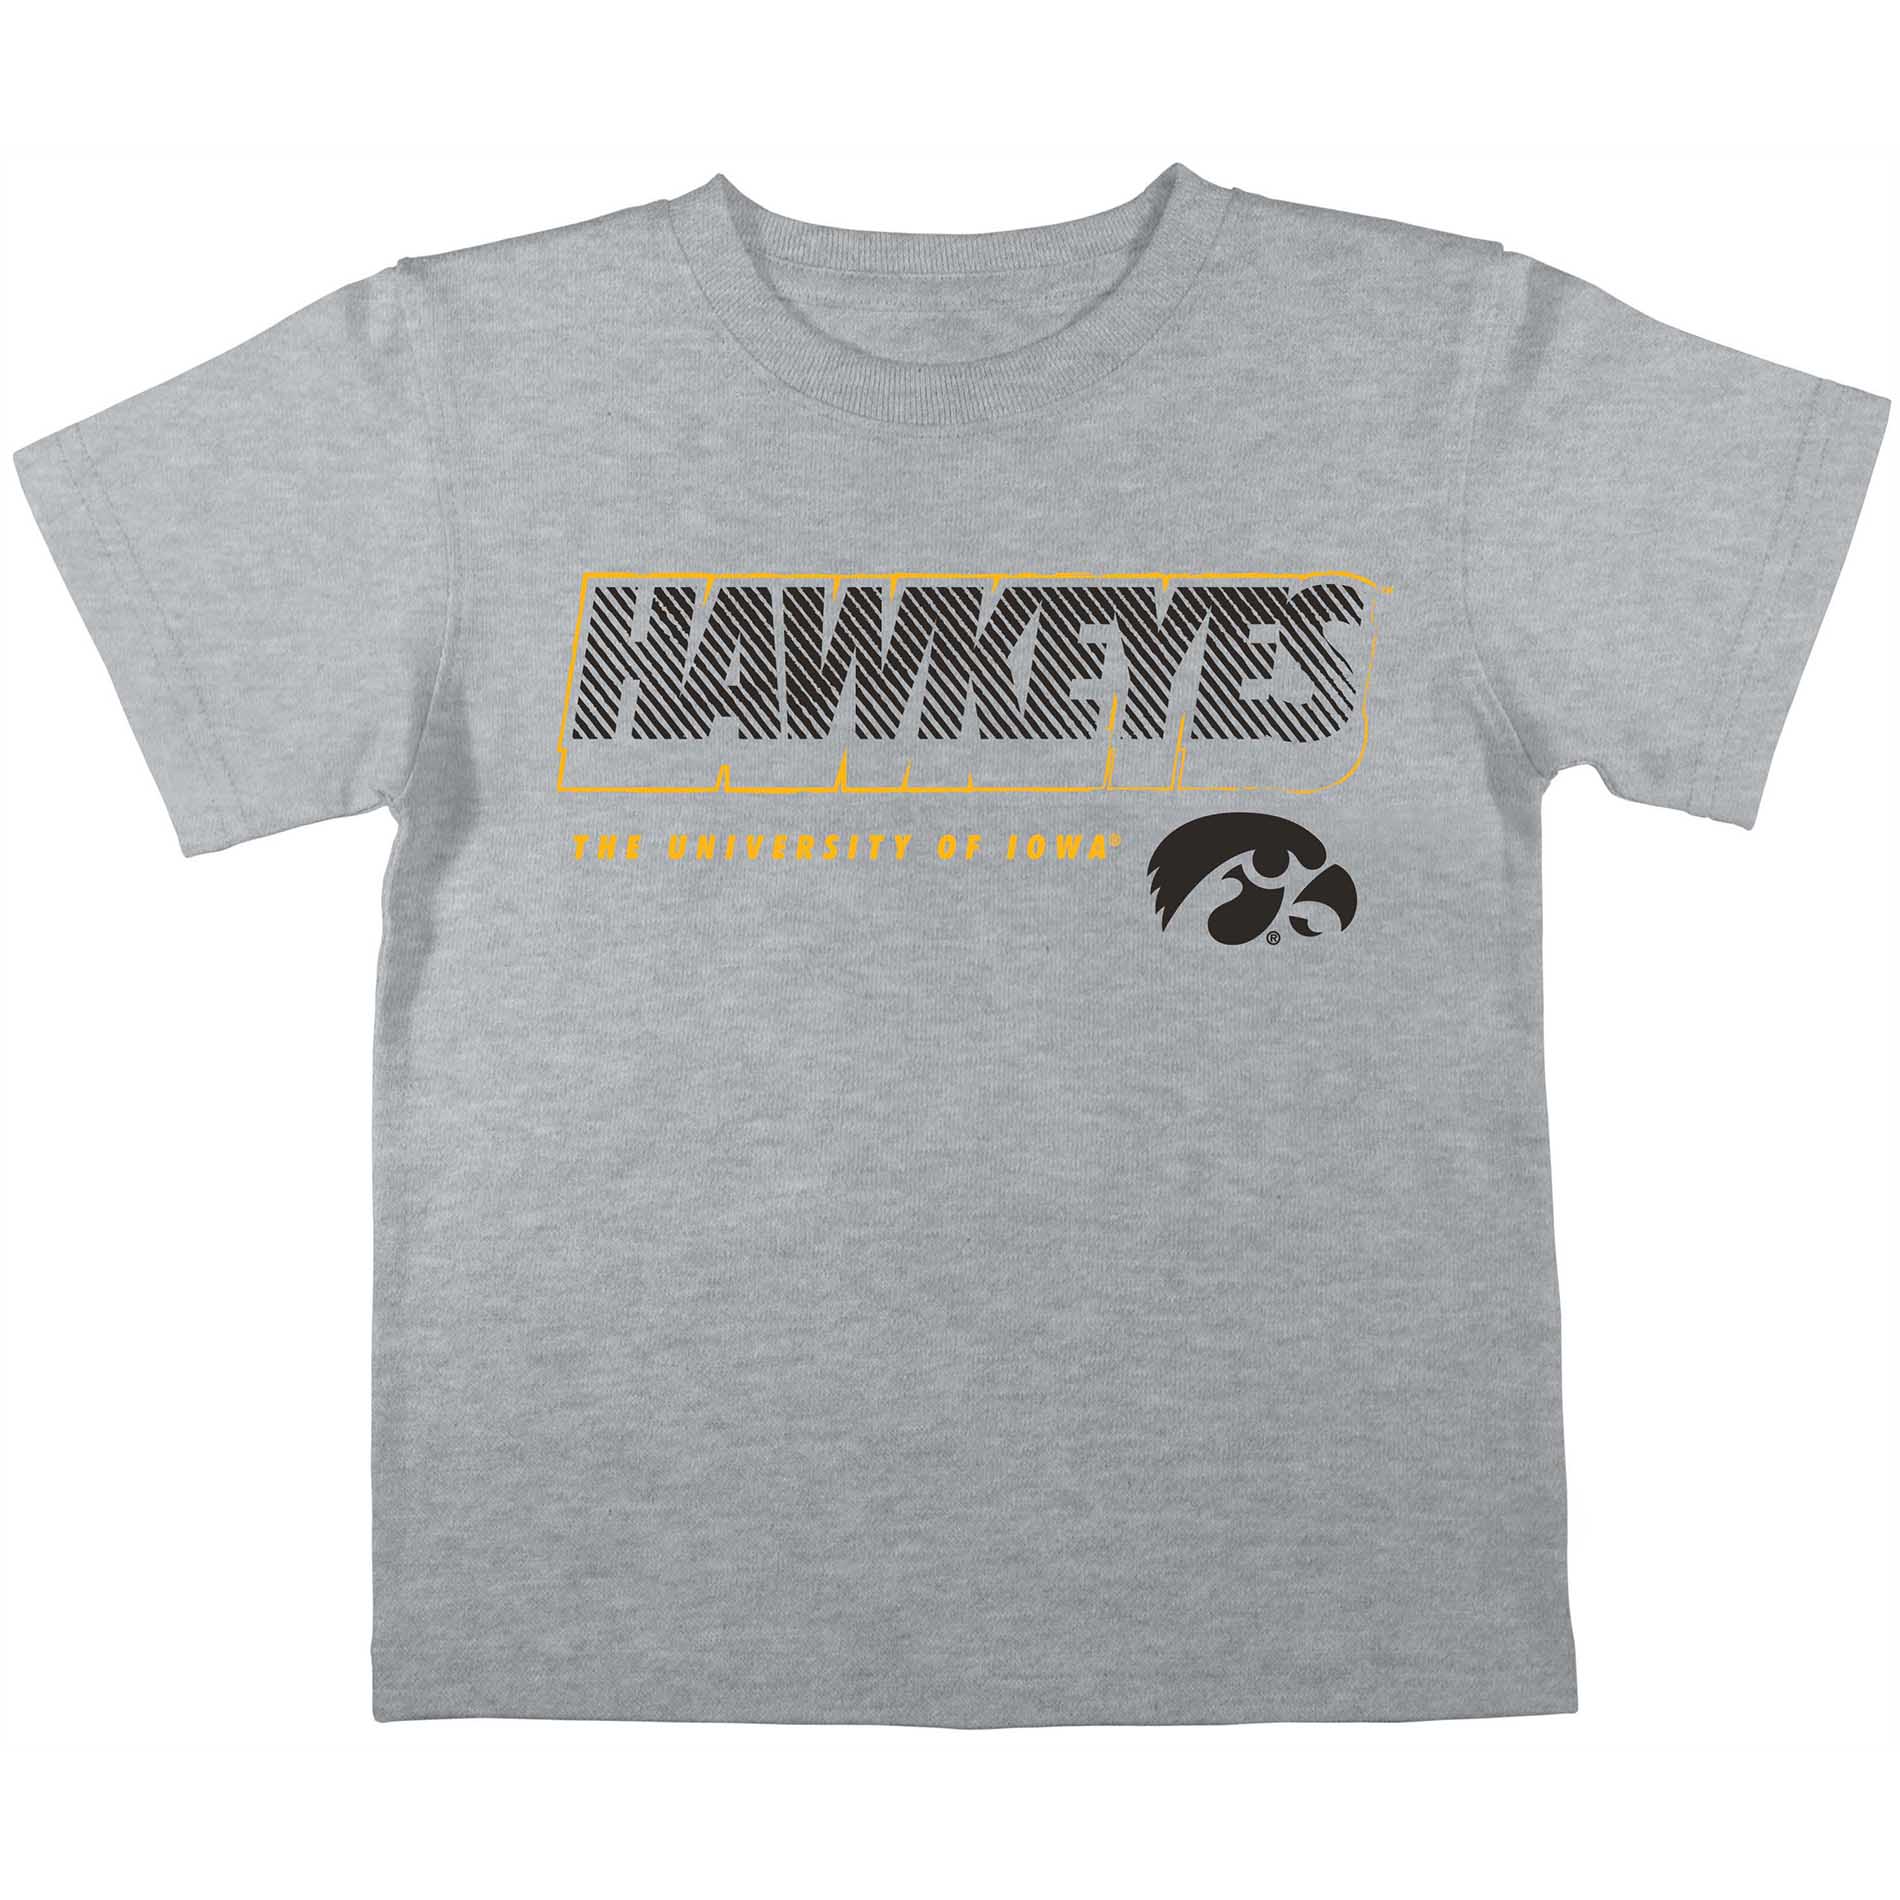 NCAA Youth University of Iowa Hawkeyes Short Sleeve Tee